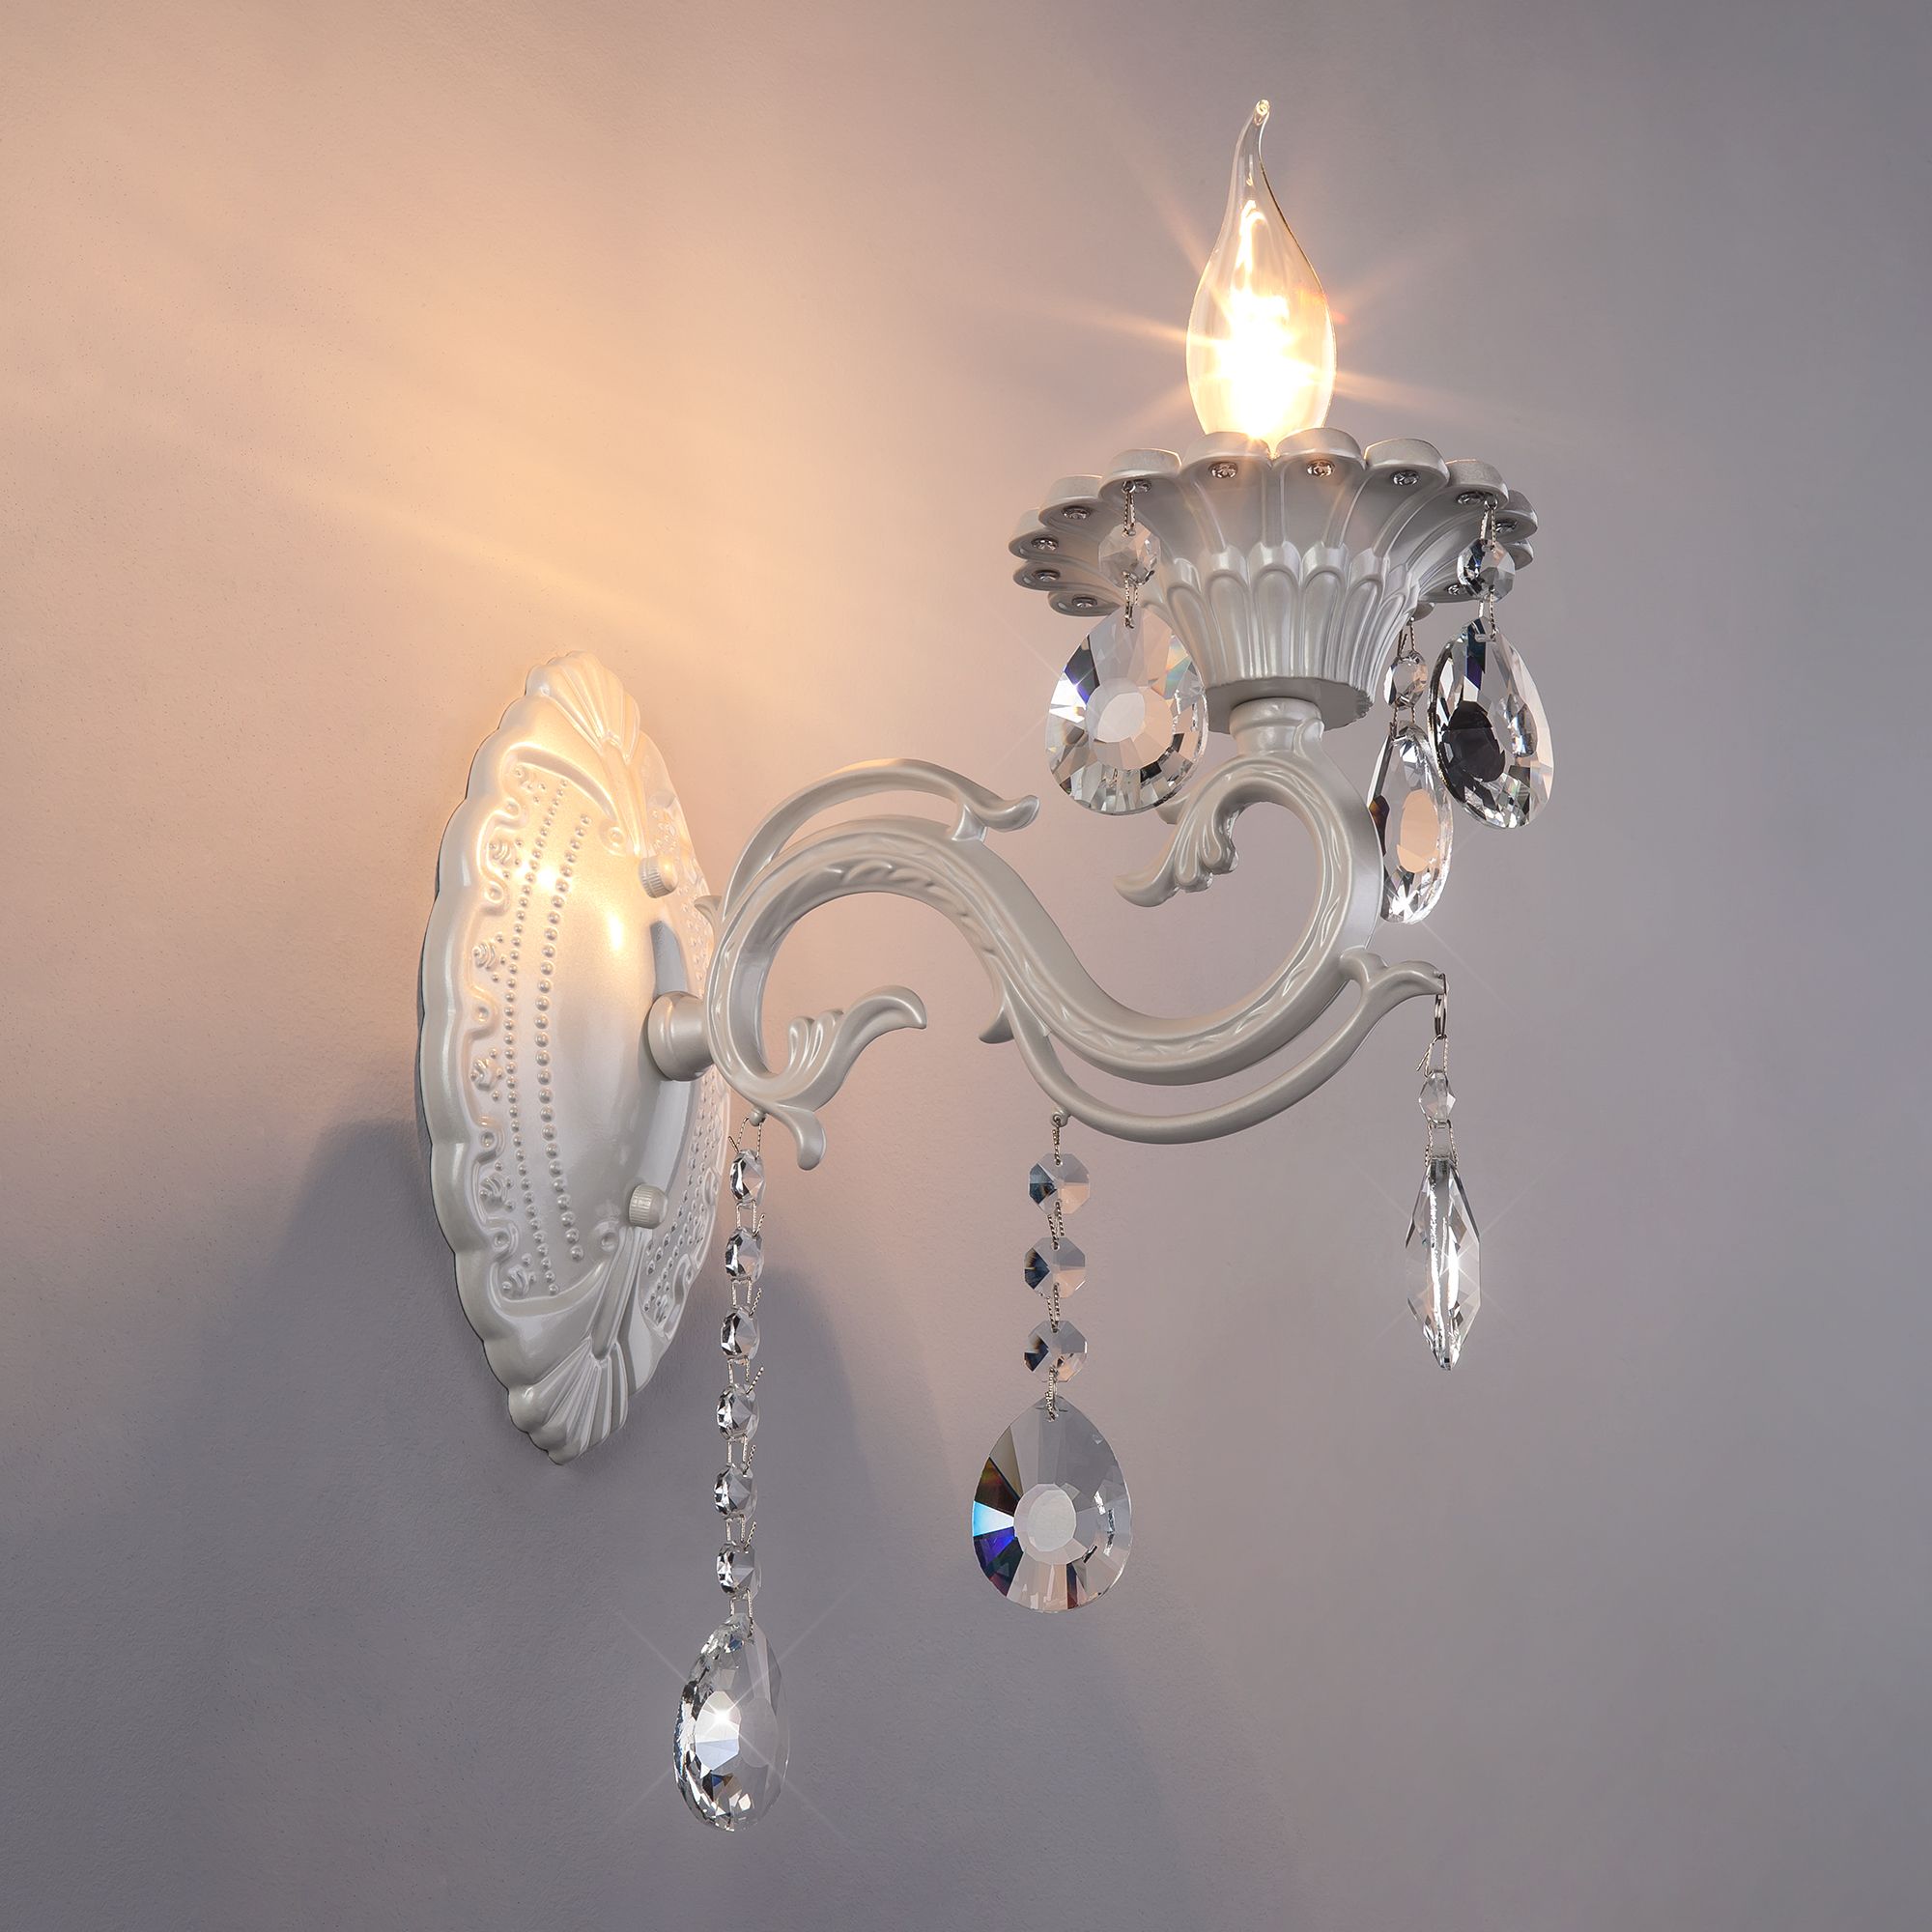 Настенный светильник с хрусталем Bogate's Tivoli 294/1 белый. Фото 3